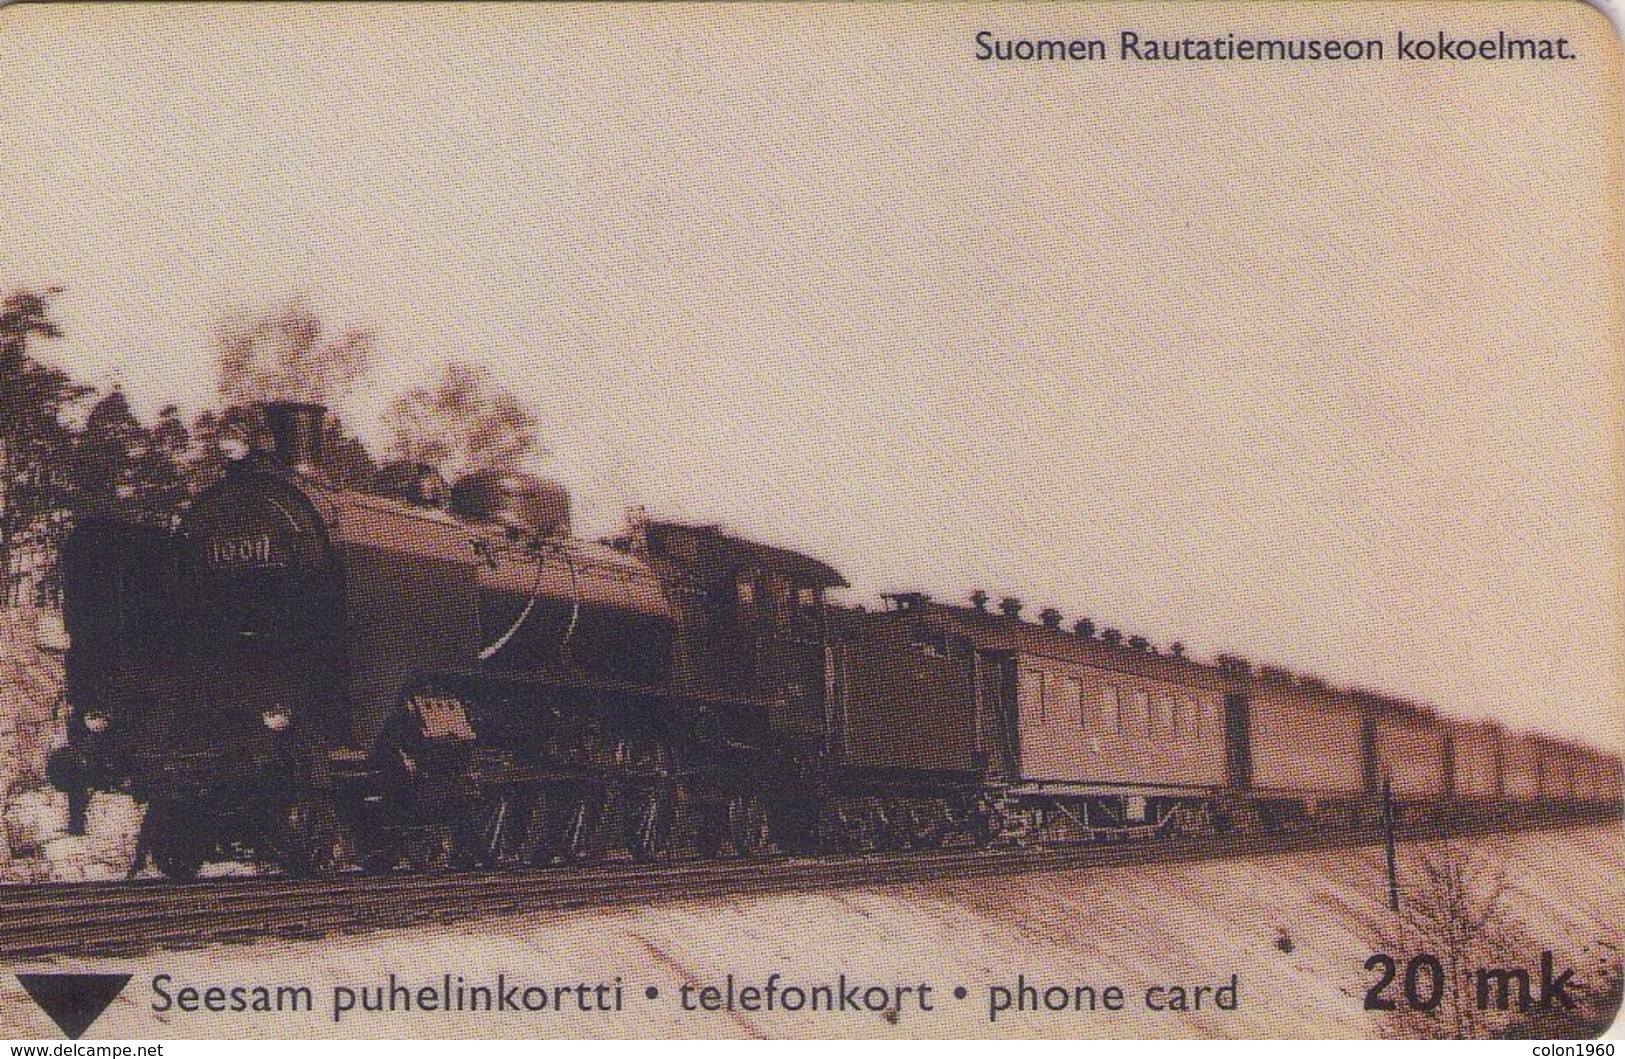 FINLANDIA. TTL-D-377E. TRENES, OLD TRAIN. 06.01 - 2020. 4250 Ex. (039). - Trenes